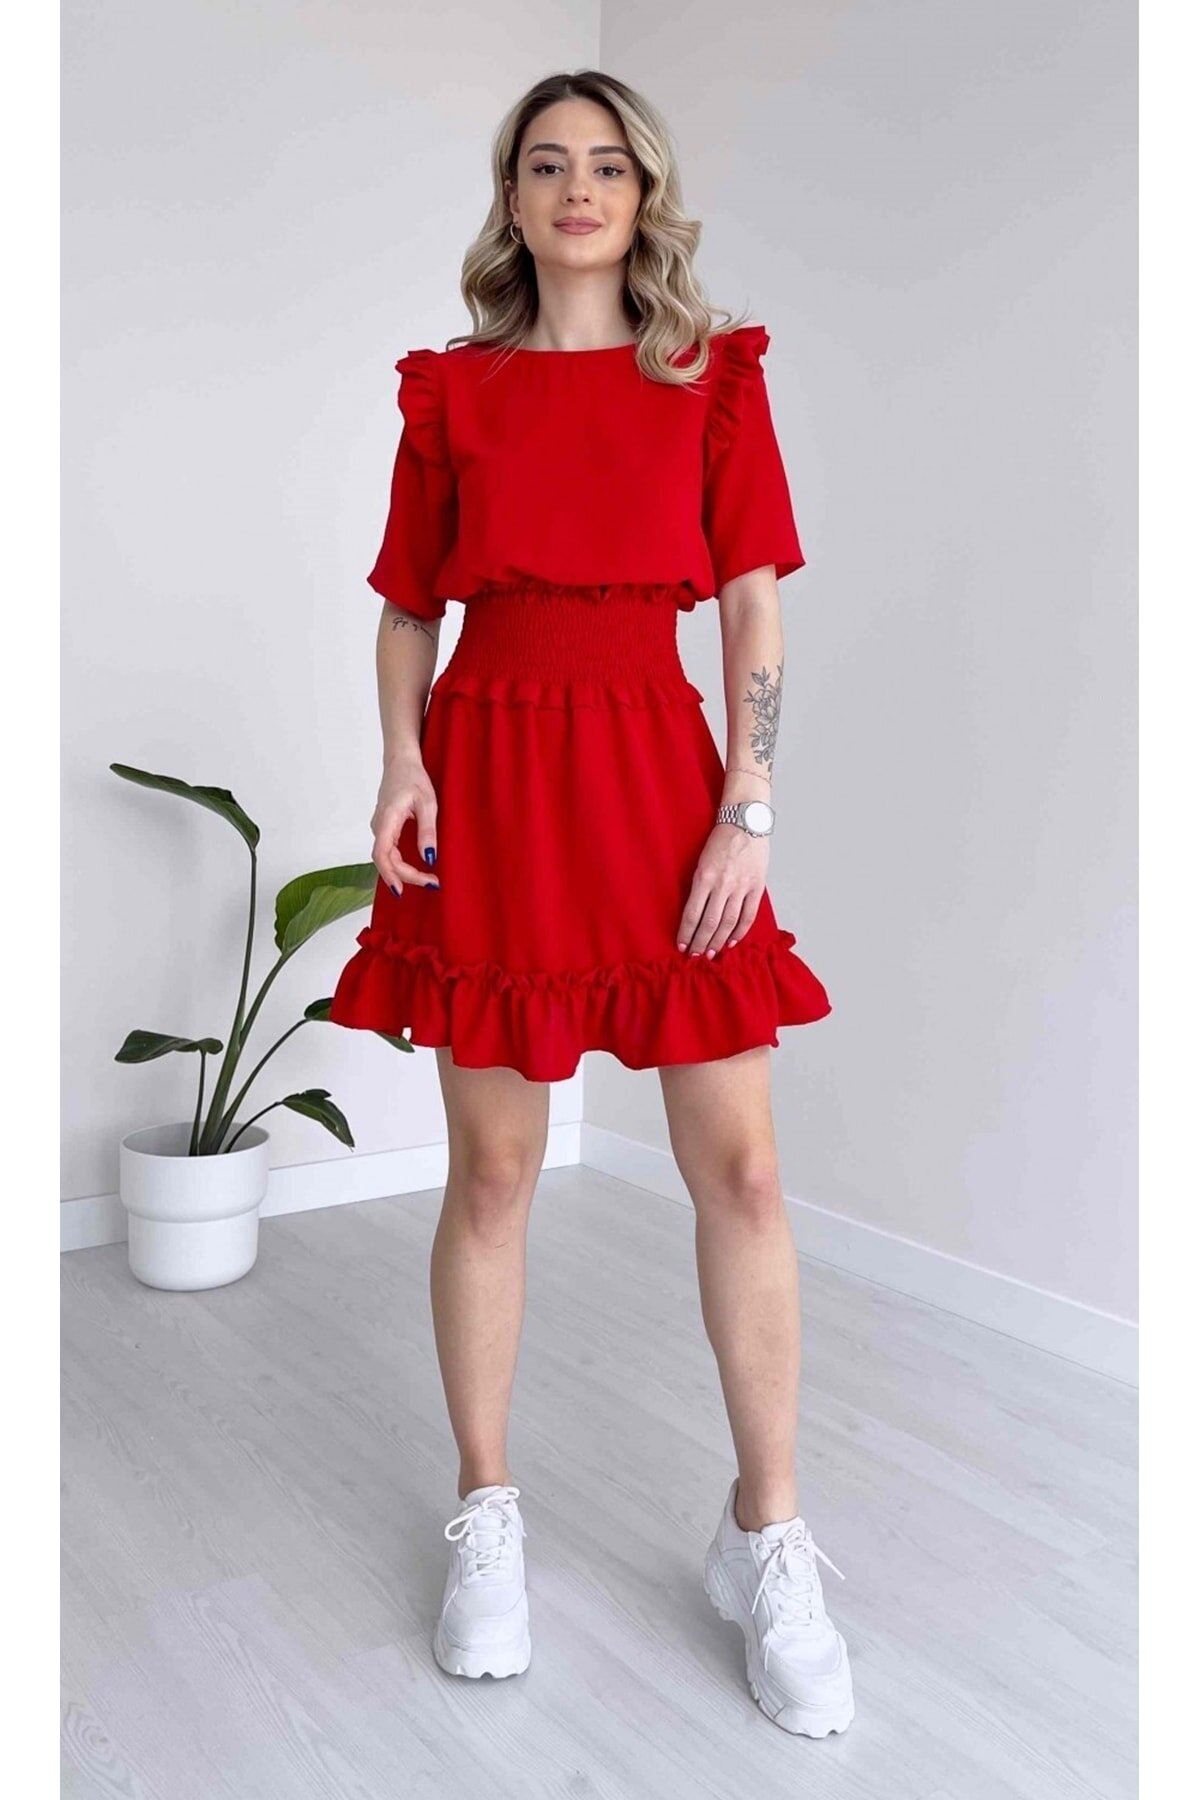 Kadın Aerobin Kumaş Beli Gipeli Kısa Kollu Kırmızı Mini Elbise 1E-6089